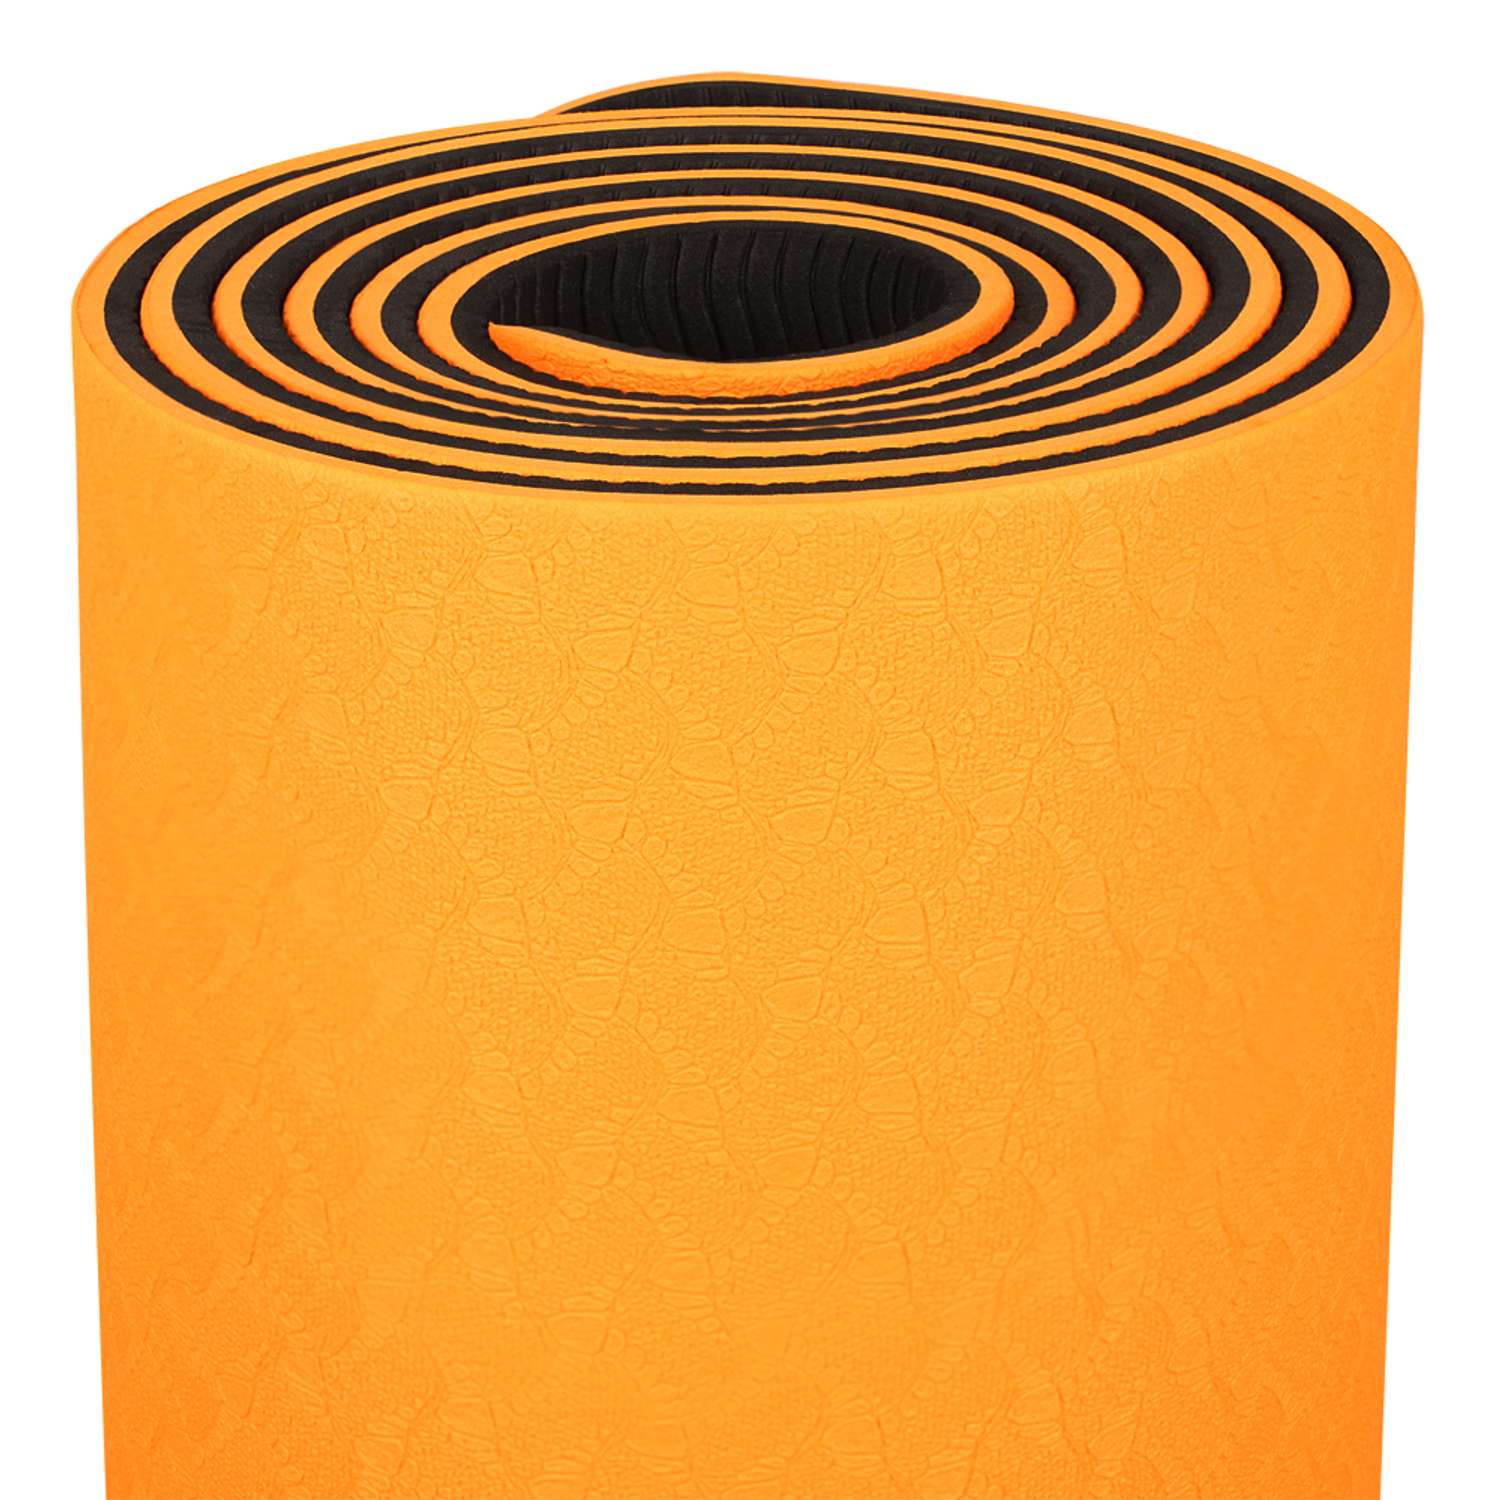 Коврик для йоги STRONG BODY двухсторонний. черно-оранжевый 183см х 61см х 0.6см - фото 4